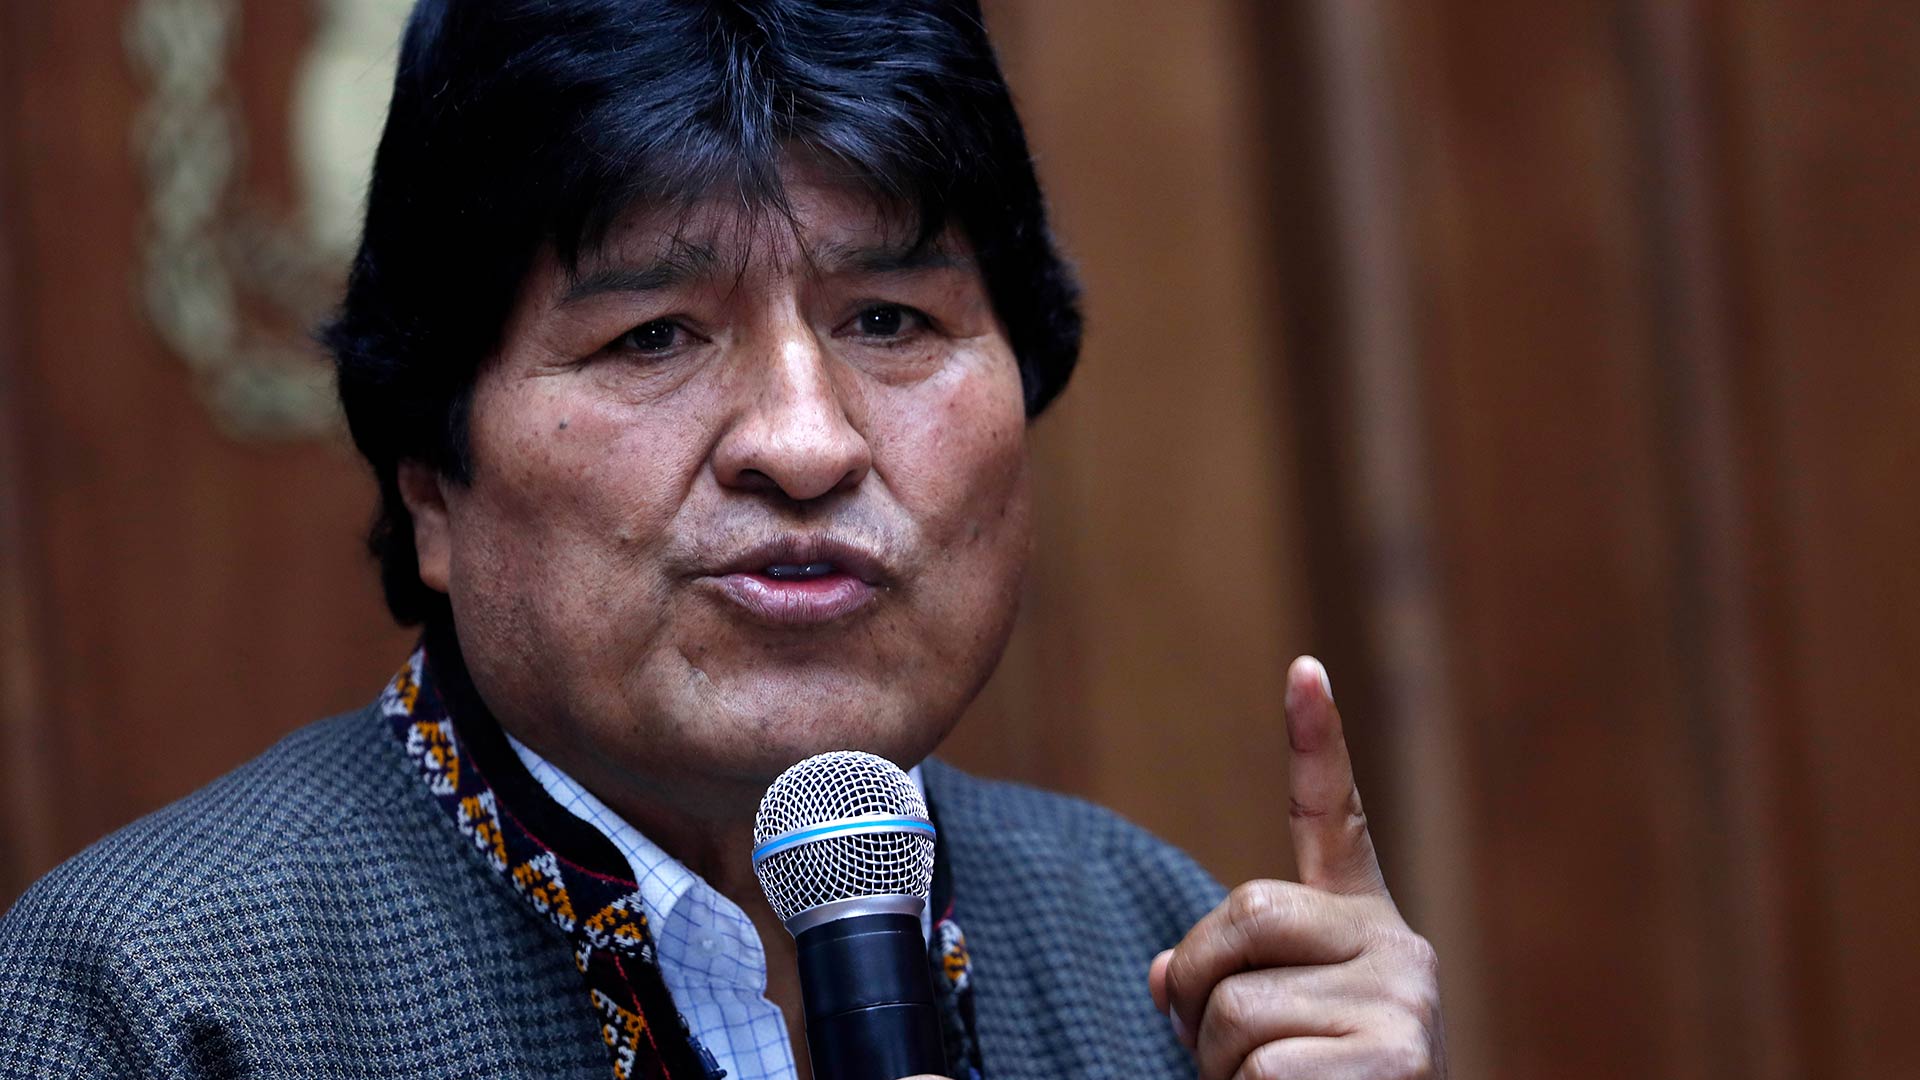 El expresidente de Bolivia Evo Morales llega a Argentina, donde recibirá el estatus de refugiado